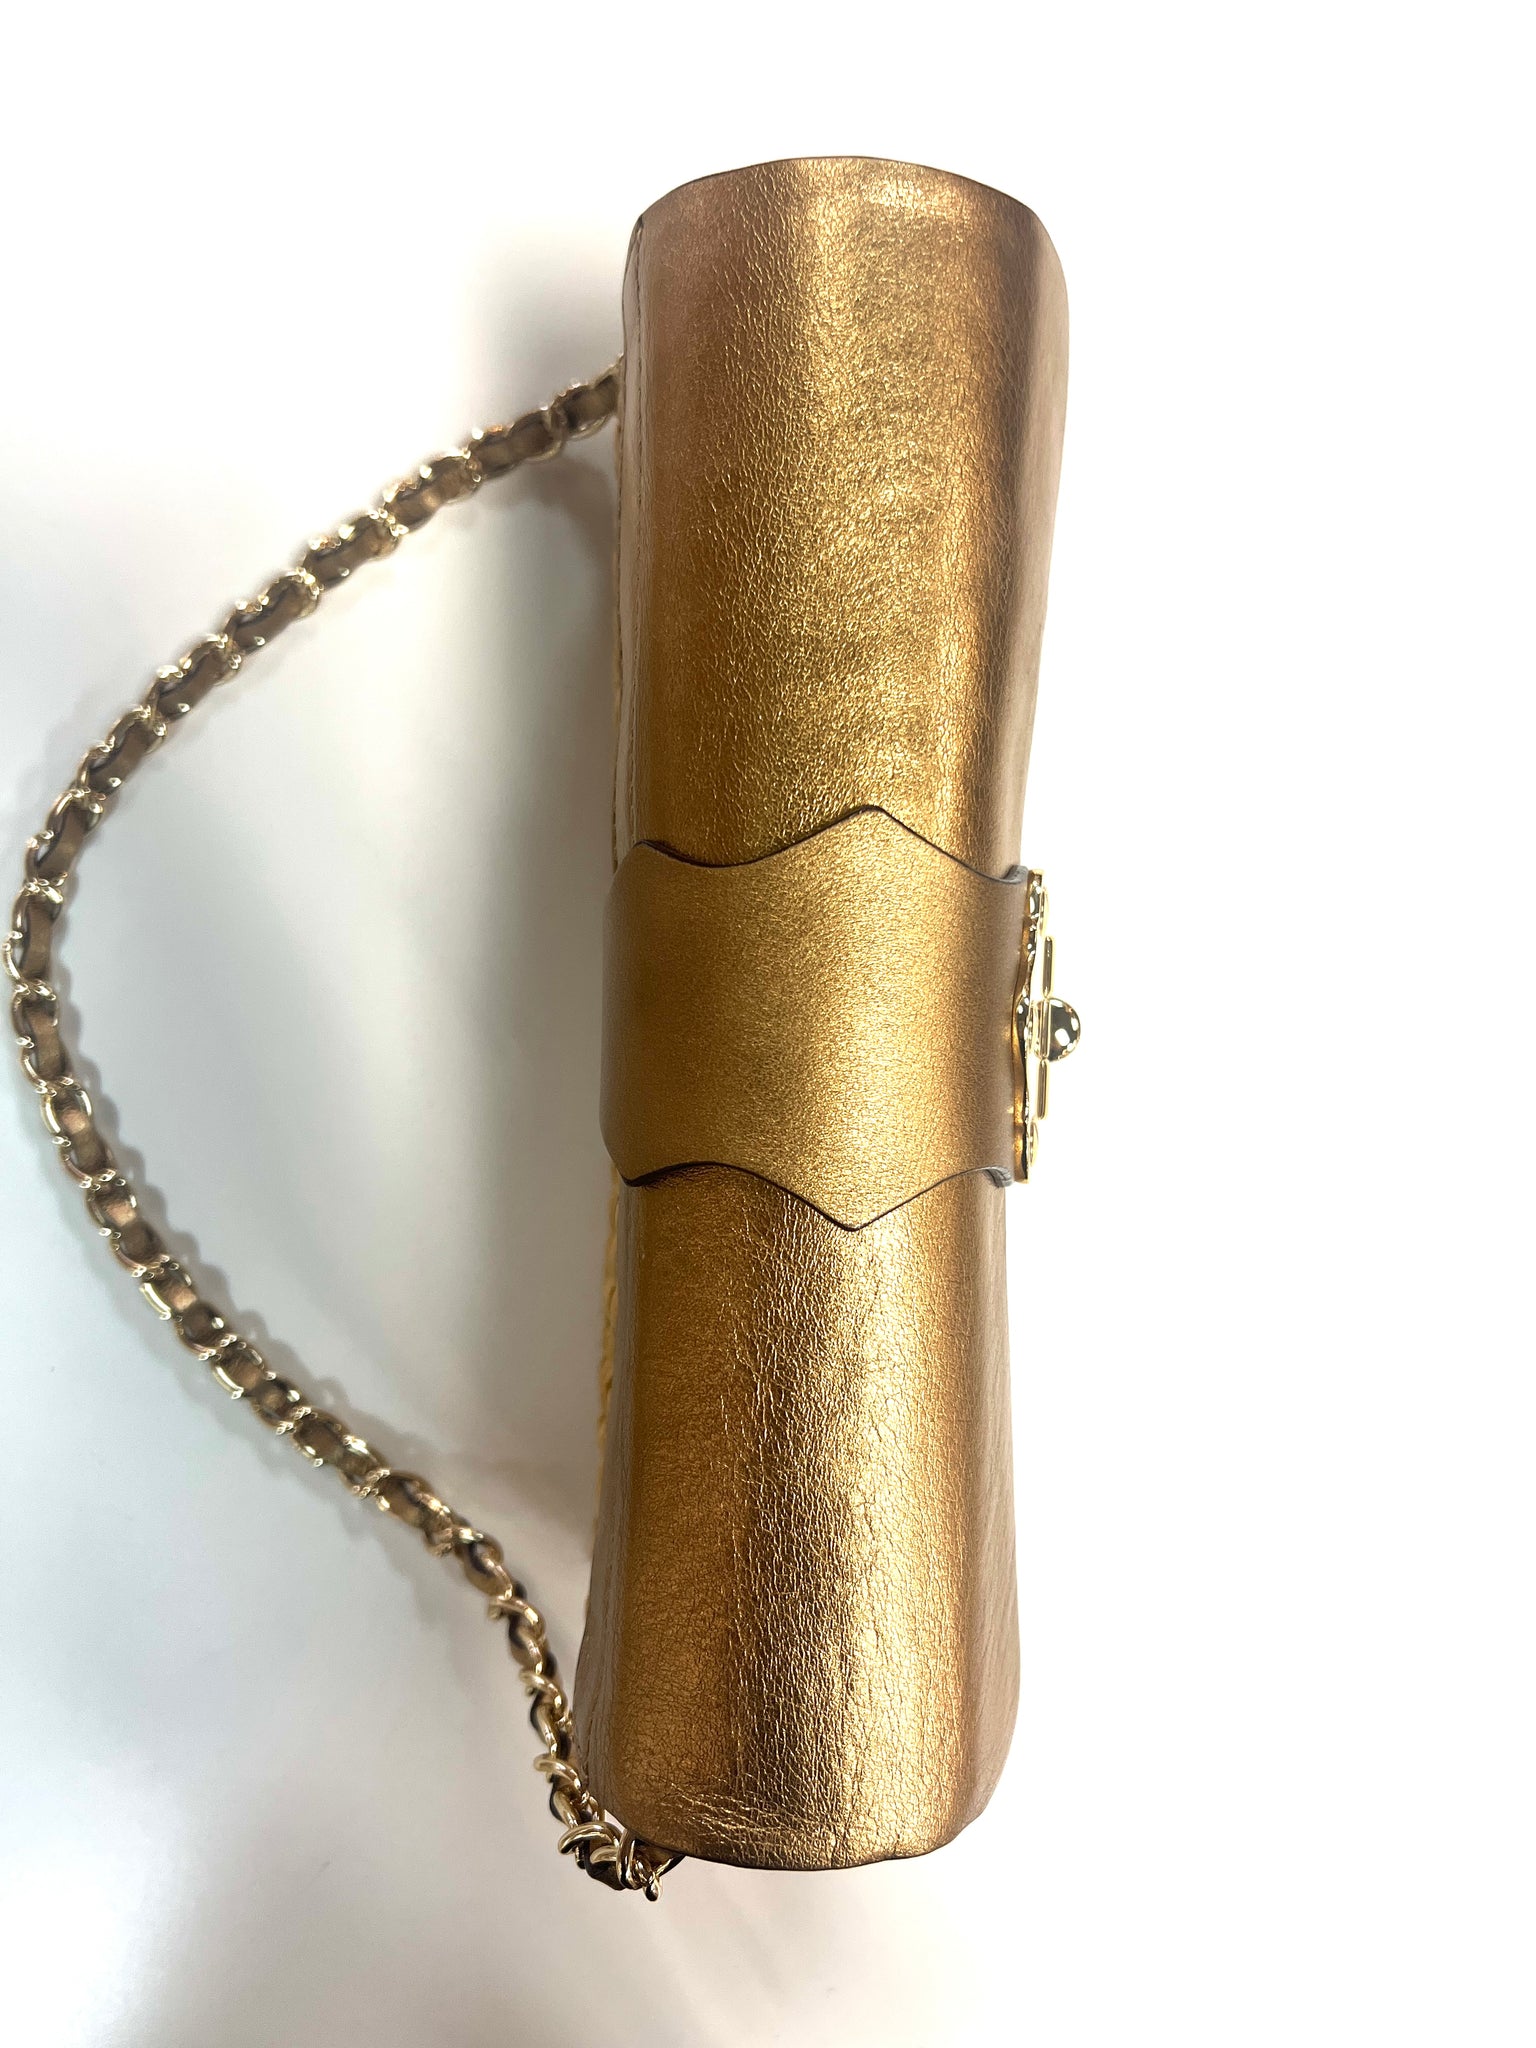 Michael Kors Kara Large Duffle Metallic Leather Satchel Shoulder Bag Rose  Gold for sale online | eBay